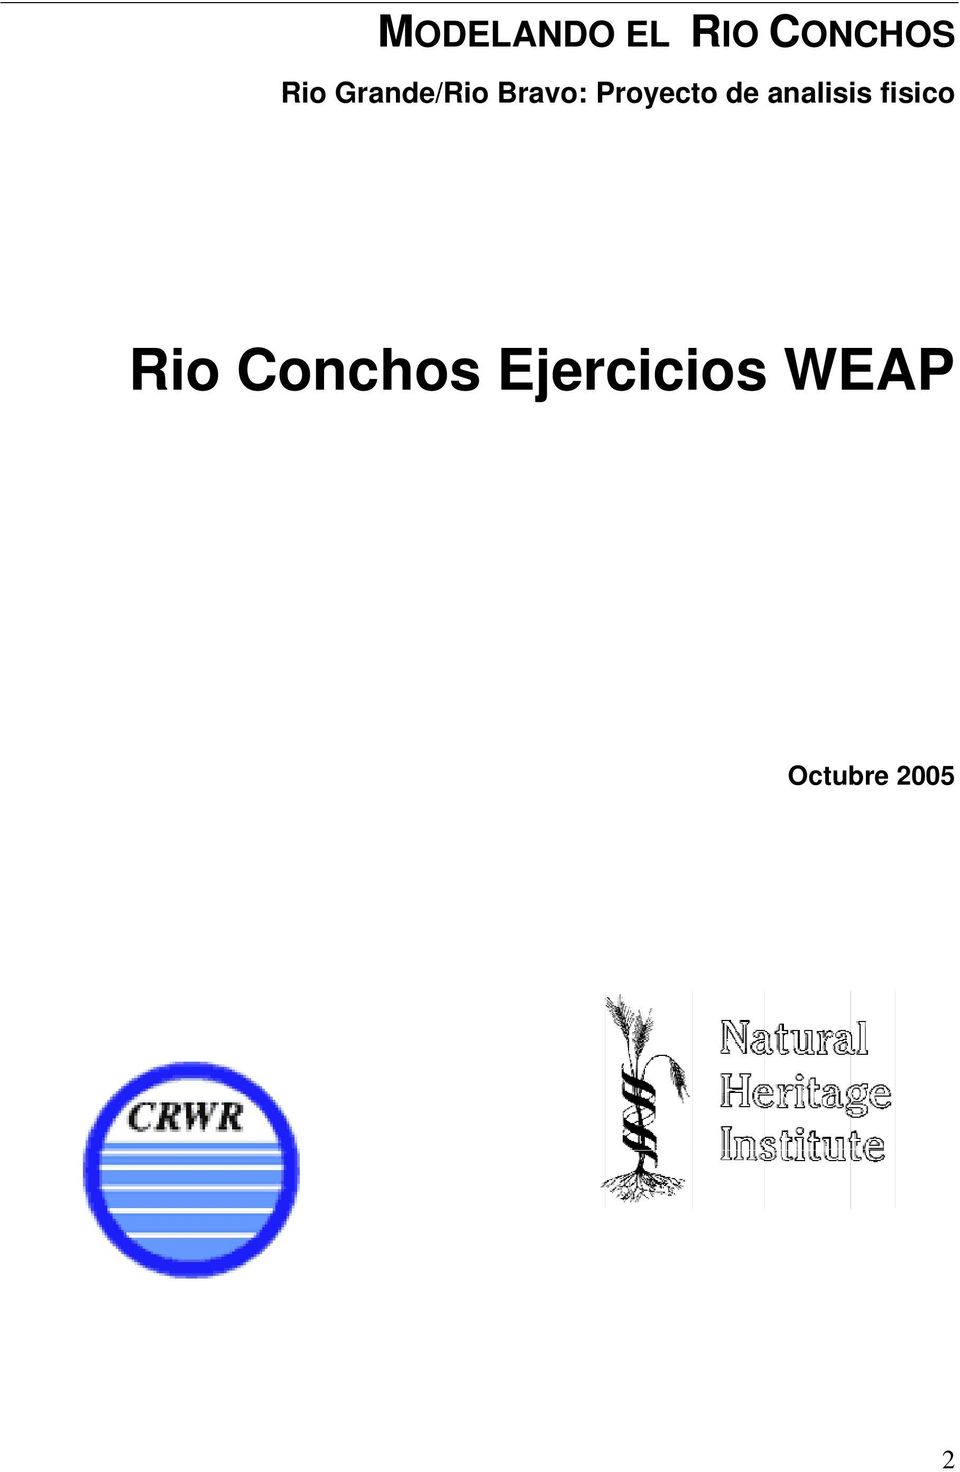 analisis fisico Rio Conchos